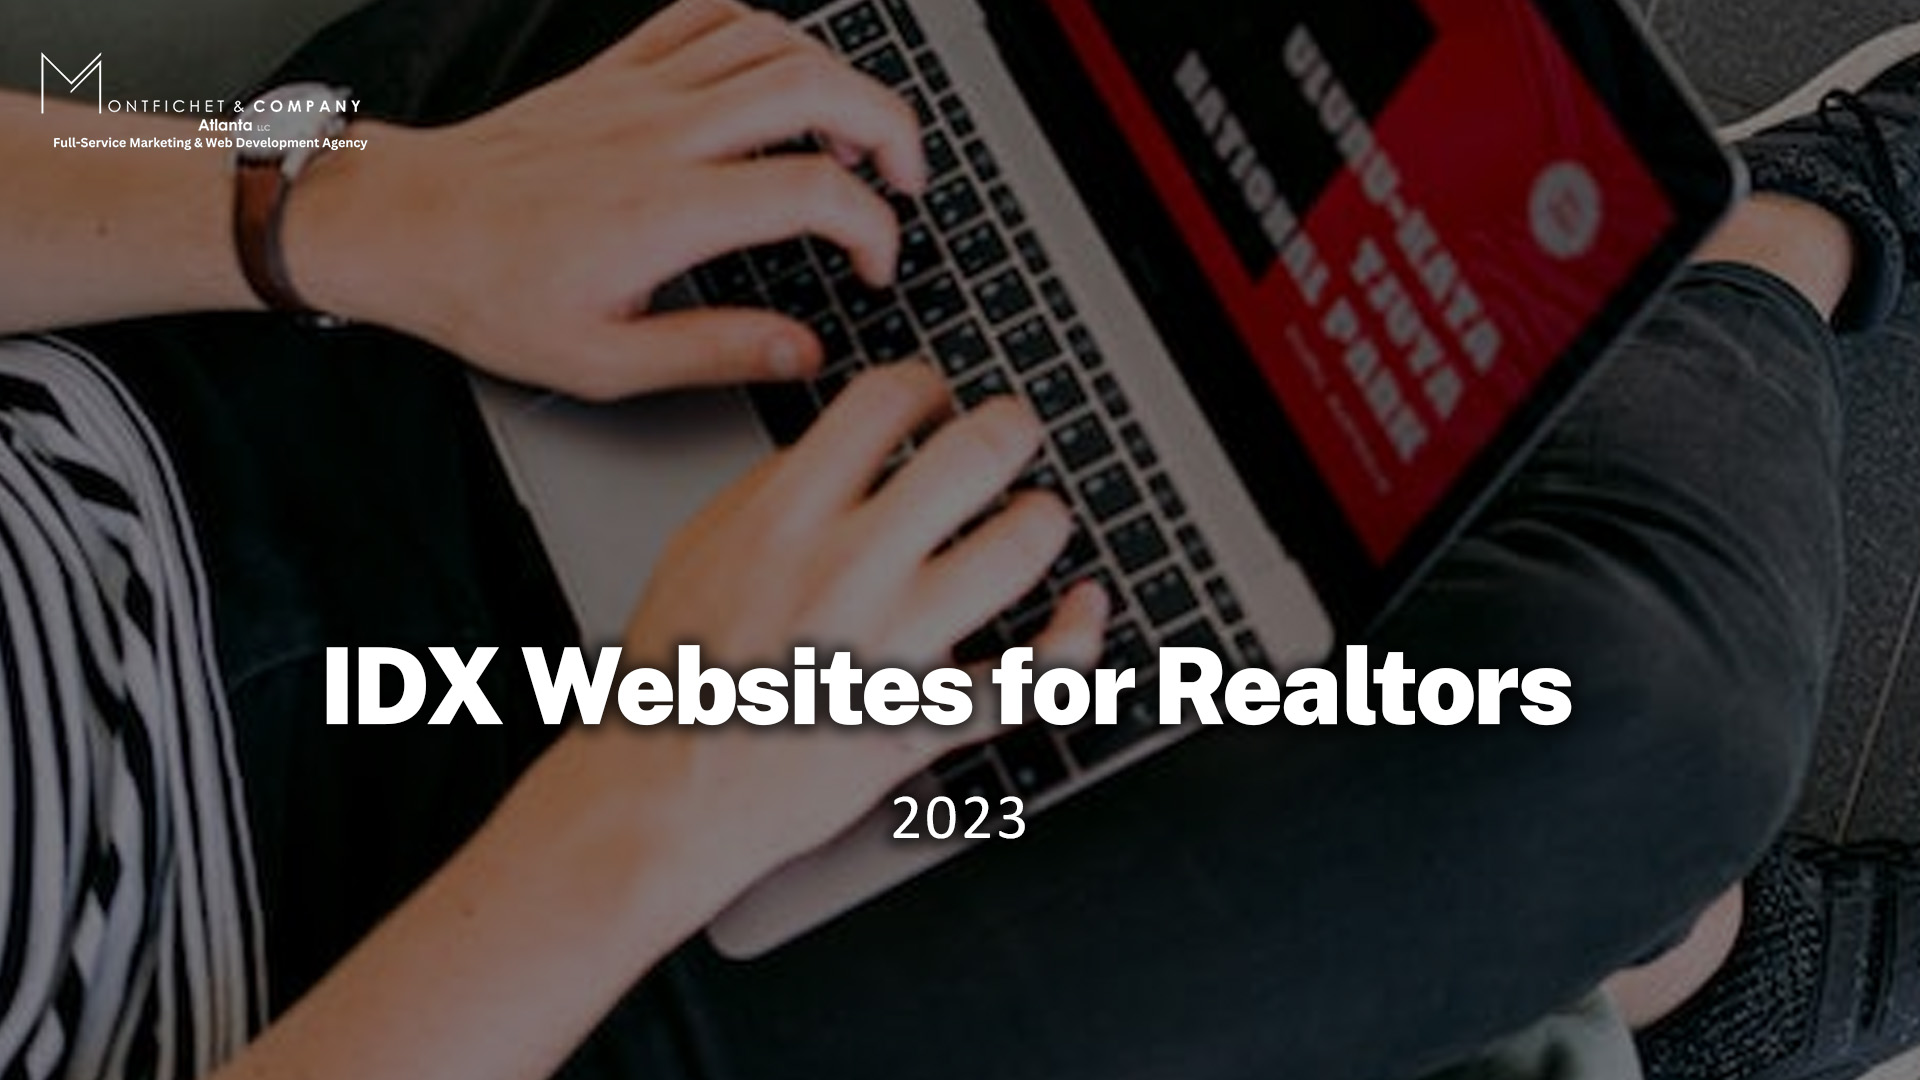 IDX Websites for Realtors 2023 